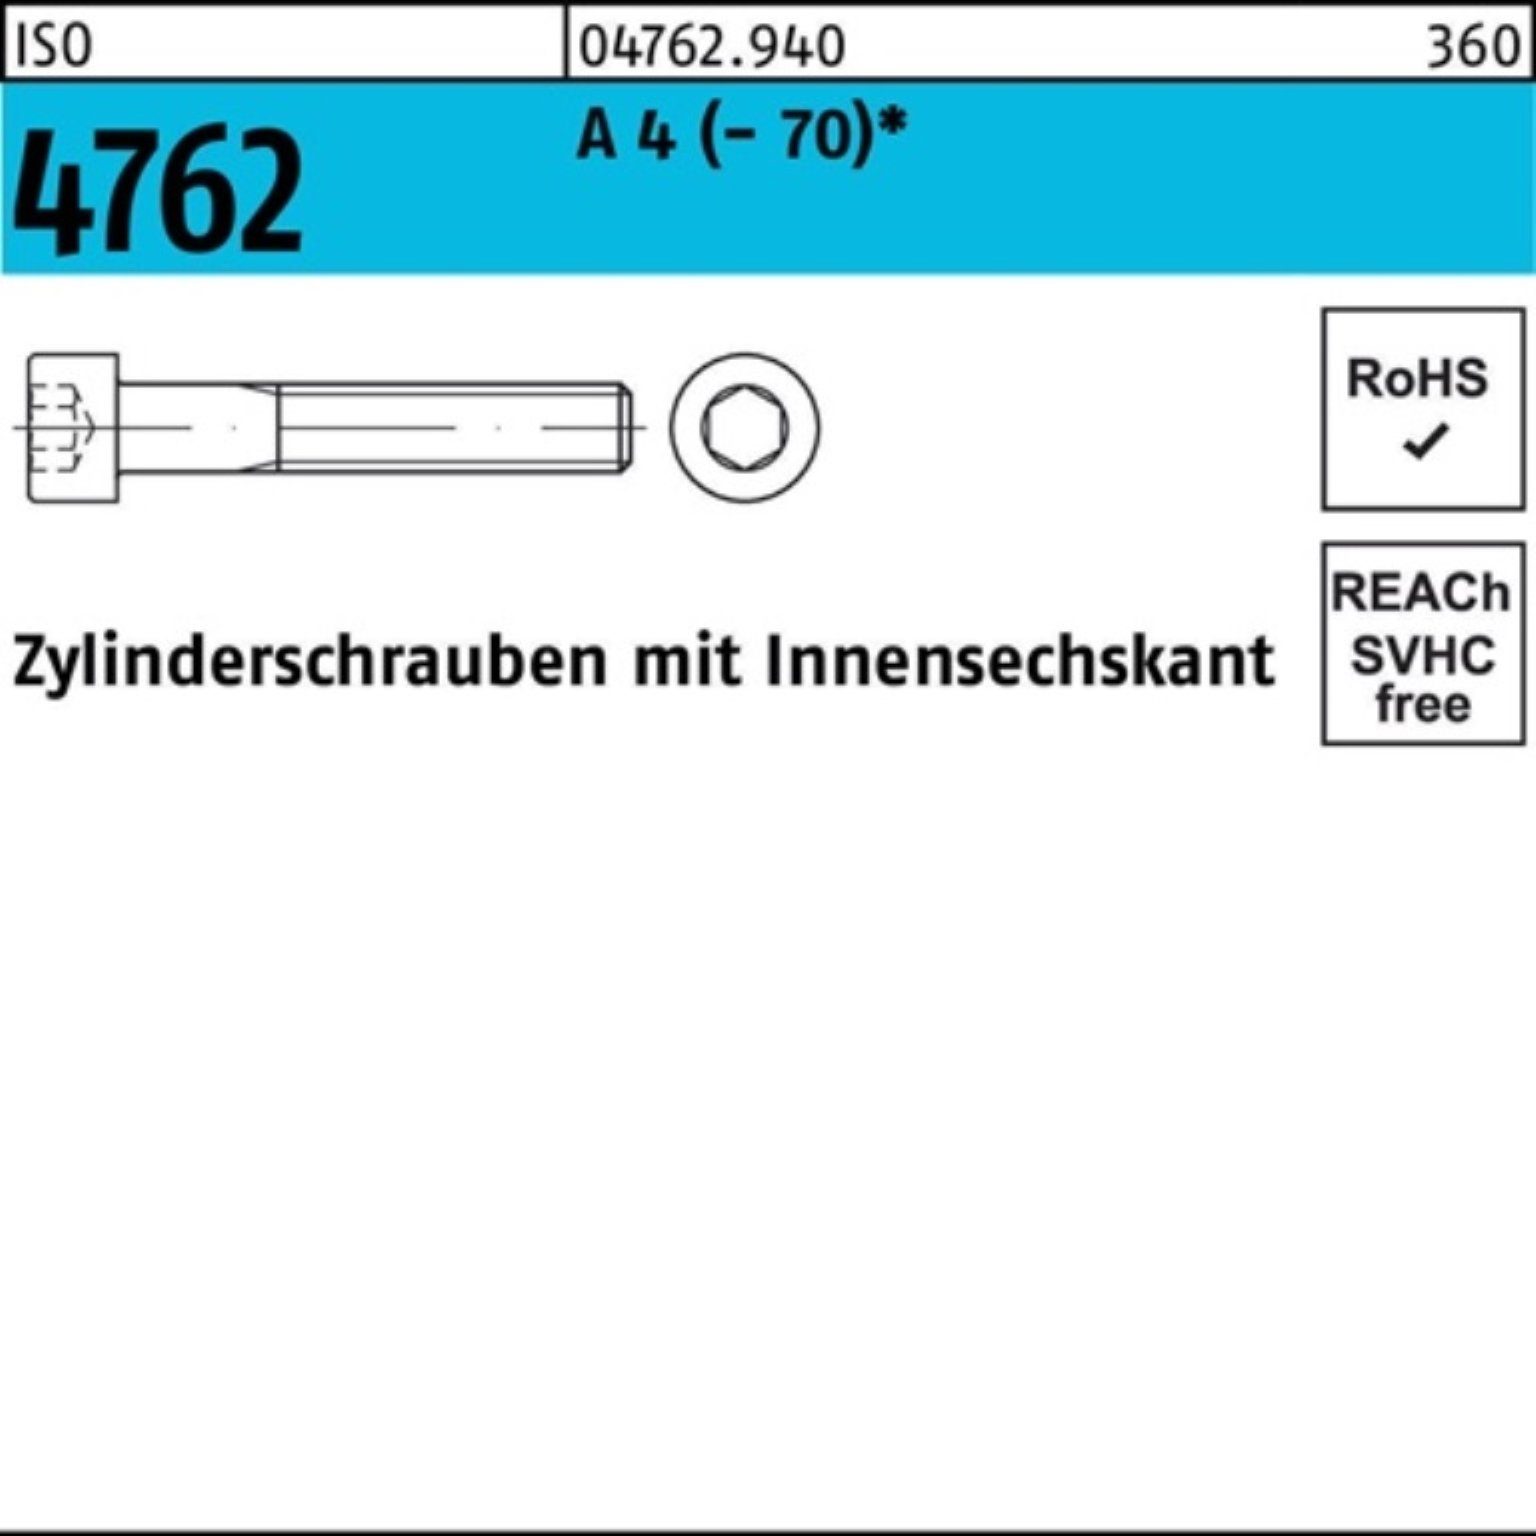 50 Zylinderschraube Innen-6kt 4 A 120 100er (70) ISO Pack M10x Zylinderschraube 4762 Reyher